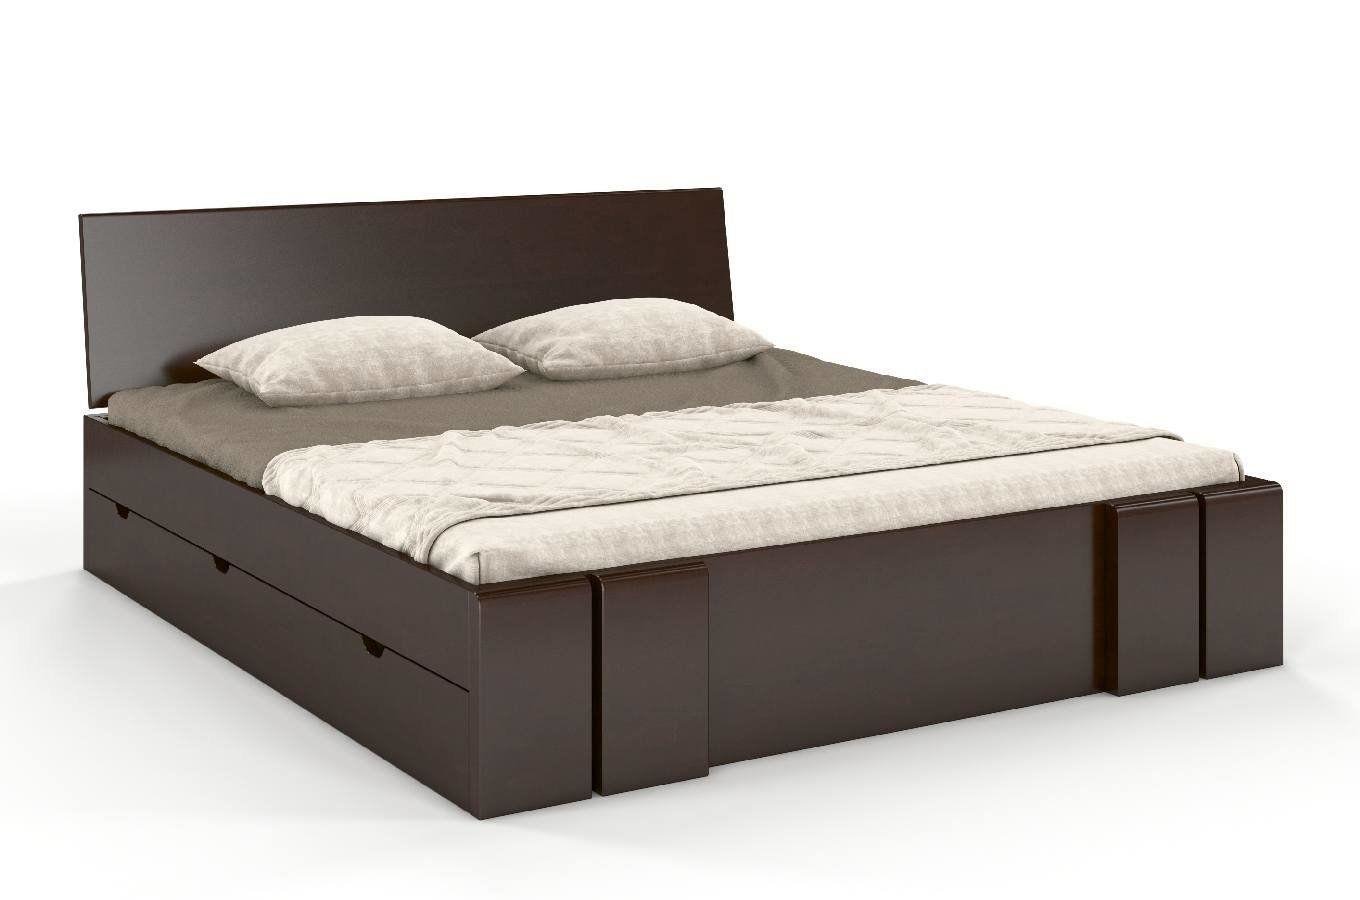 Łóżko drewniane bukowe z szufladami Skandica VESTRE Maxi & DR / 140x200 cm, kolor palisander